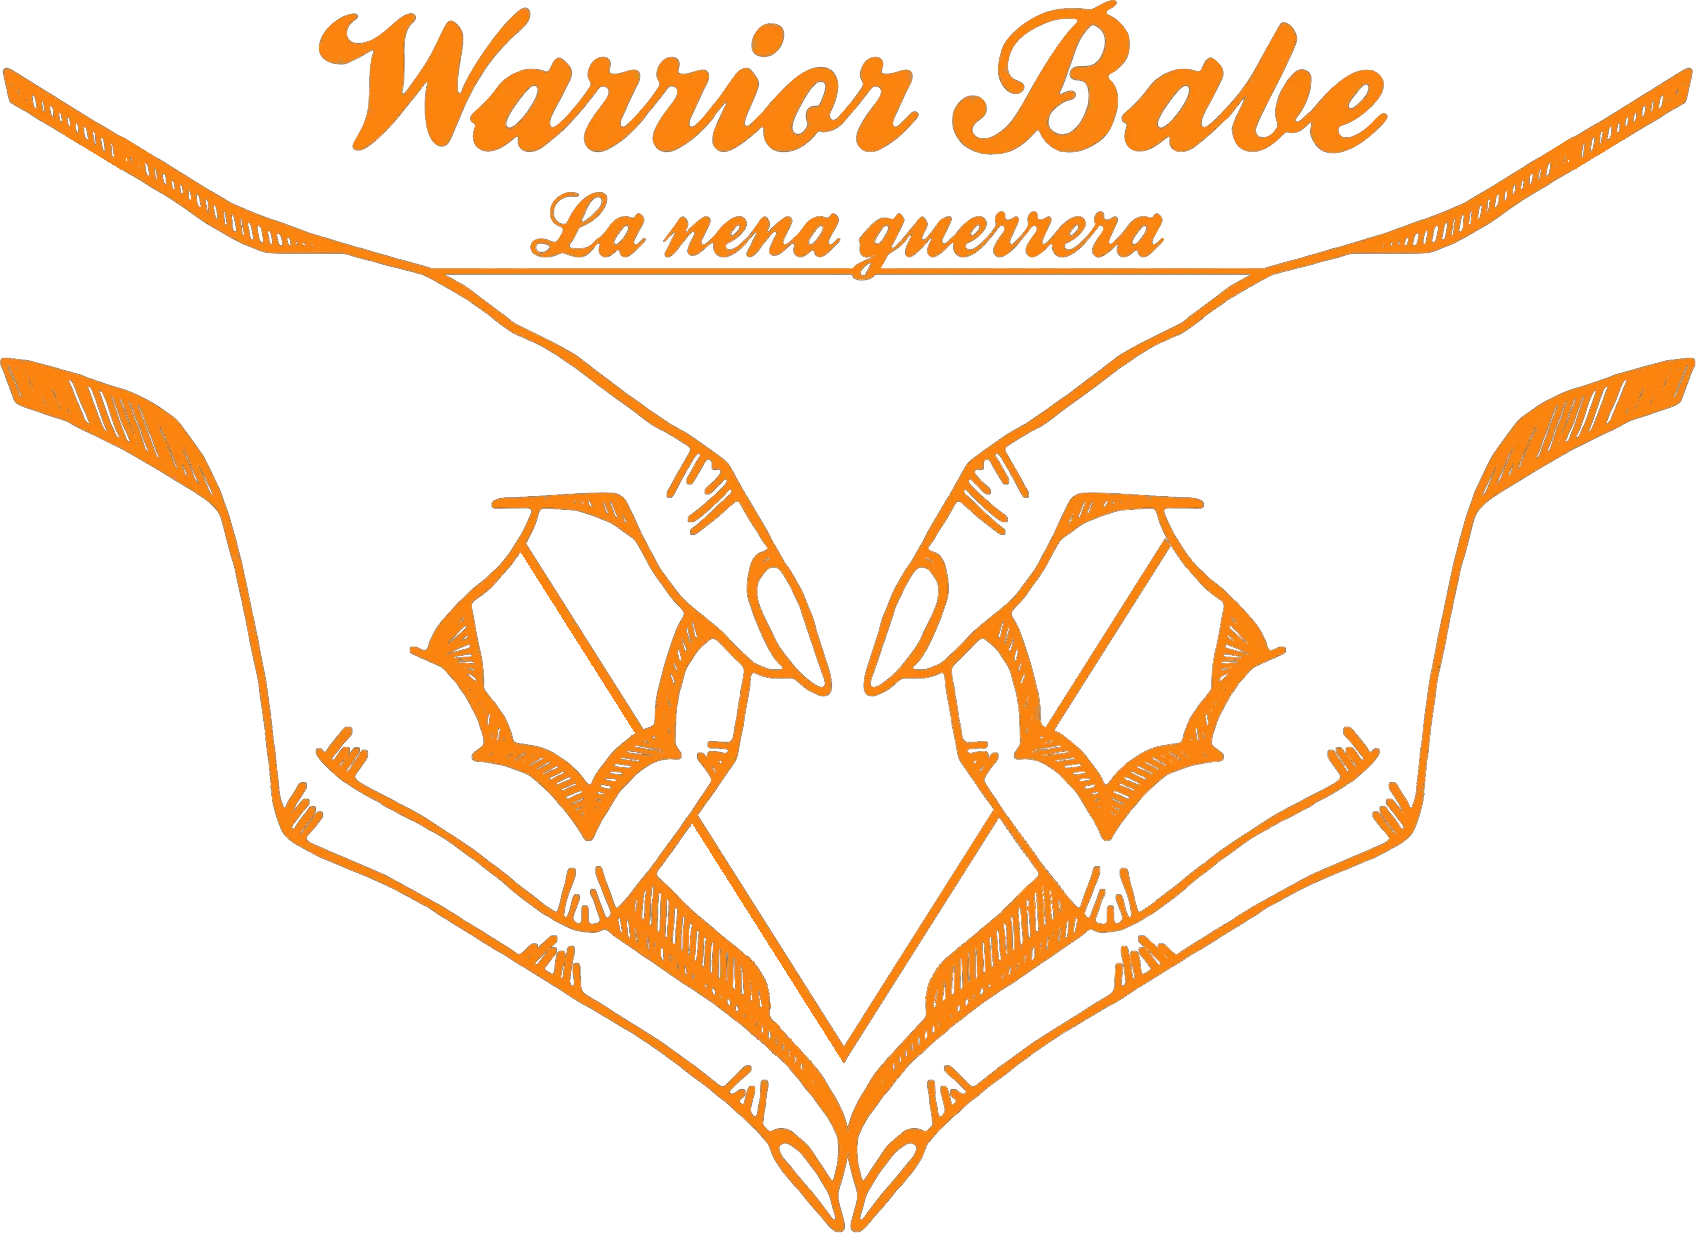 Warrior Babe promo code 